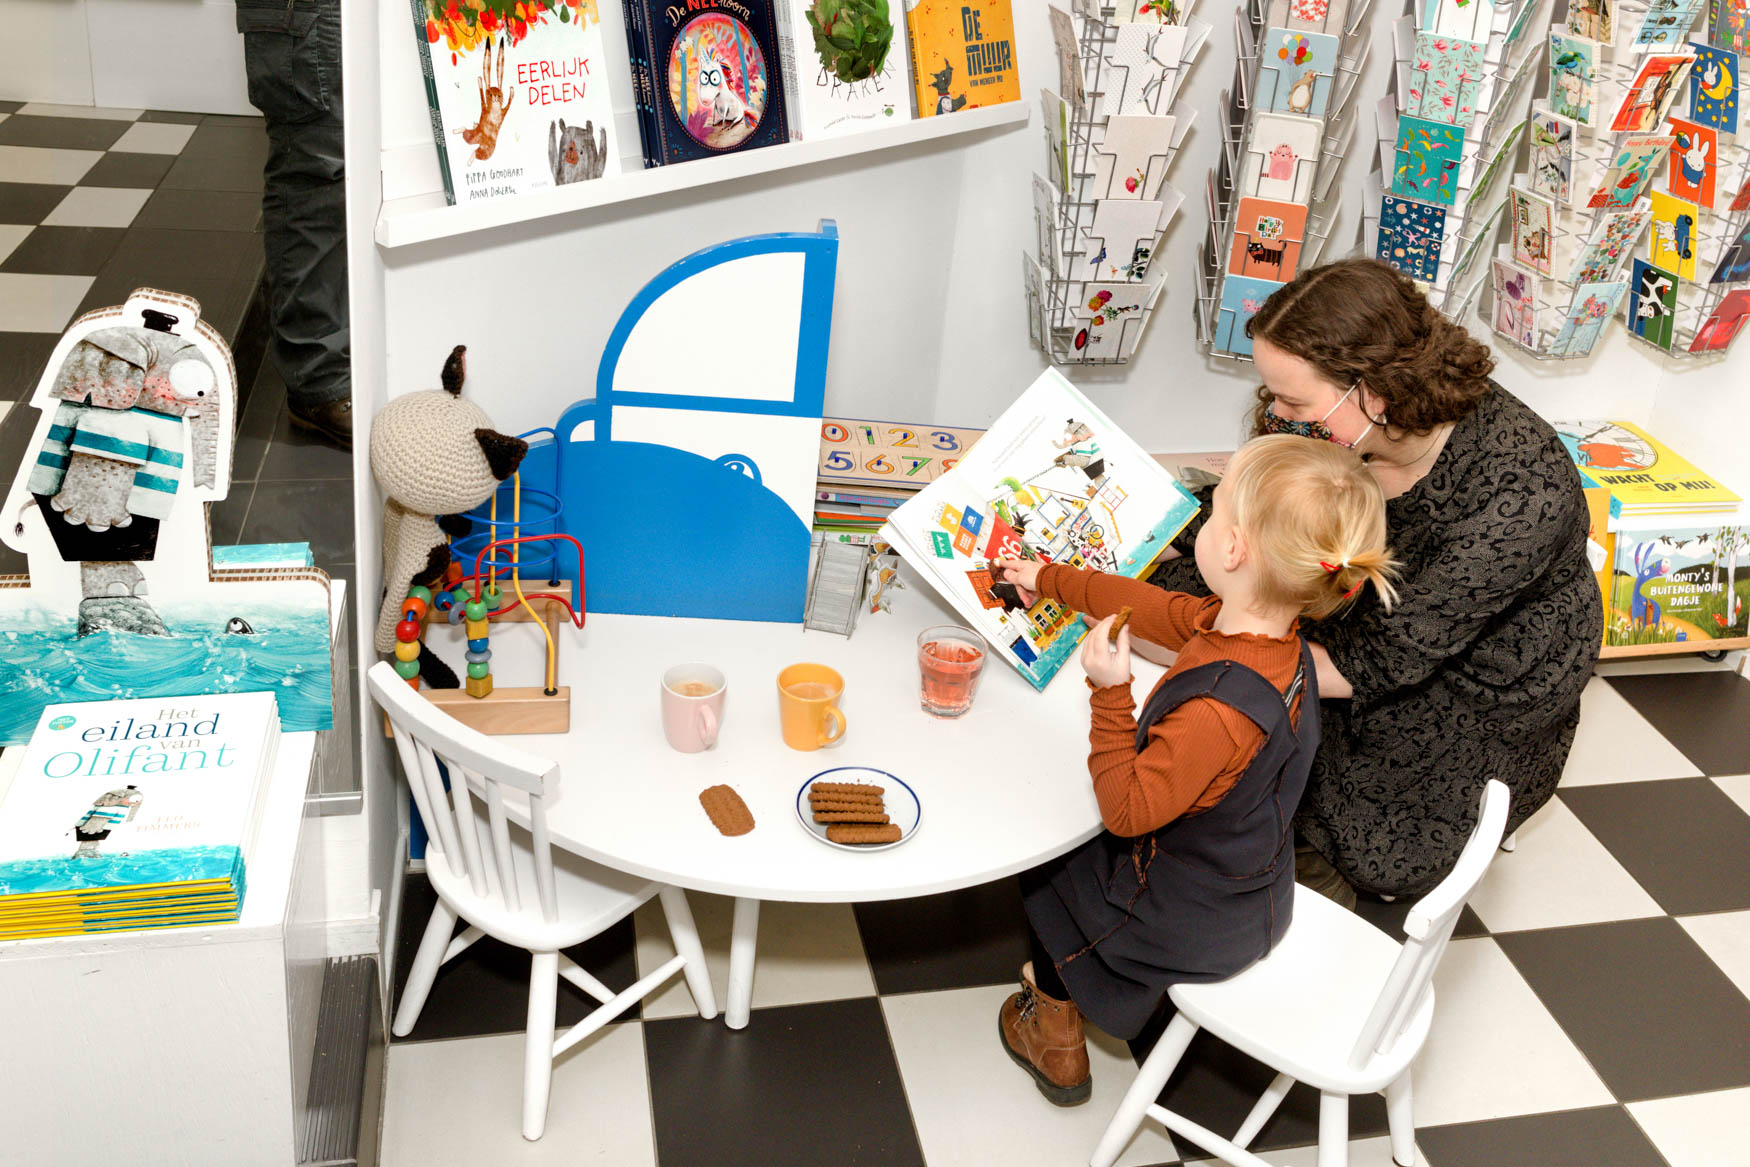 Kinderboekenwinkel De Boekenberg in Eindhoven voor De volkskrant | Sas Schilten Fotografie